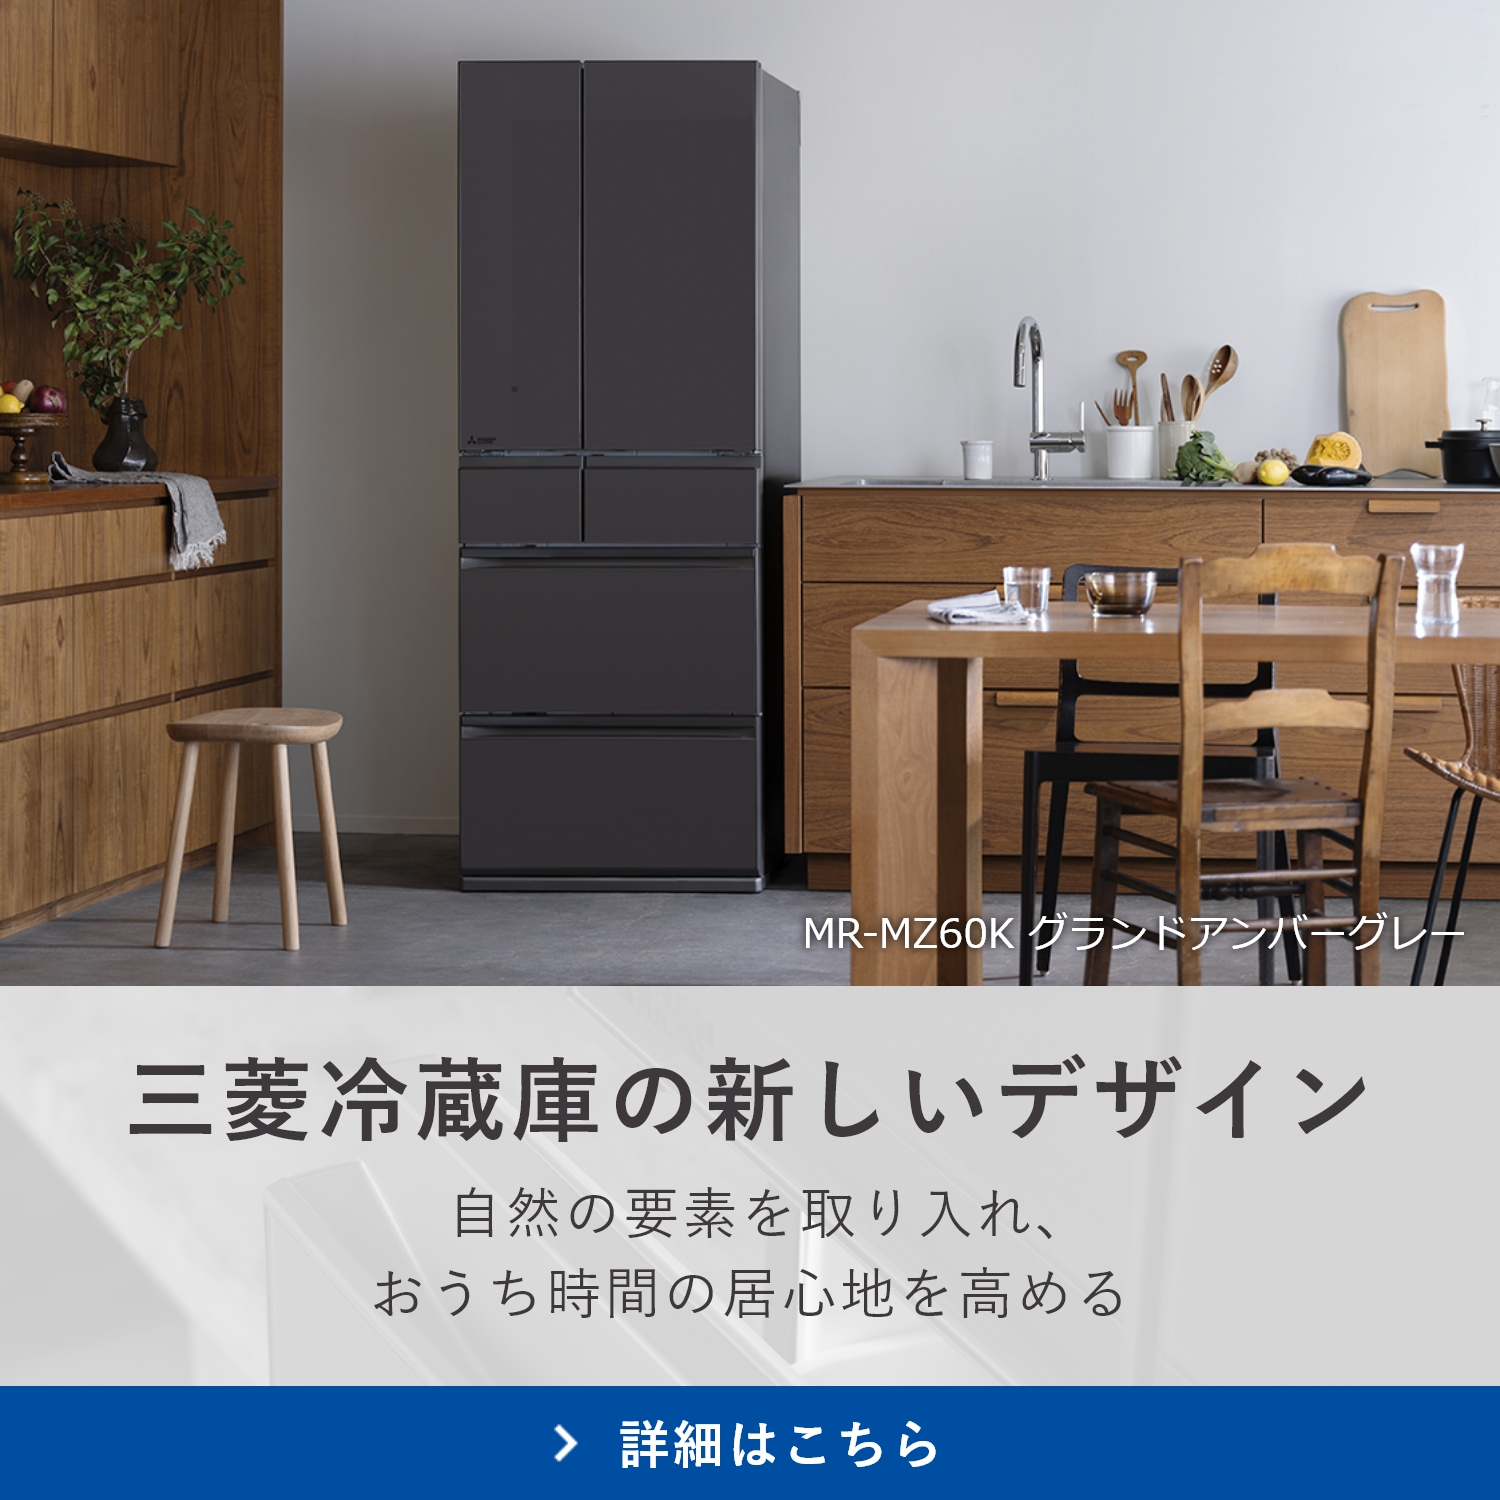 三菱ノンフロン冷凍冷蔵庫 MR-F40SW 400L - 冷蔵庫